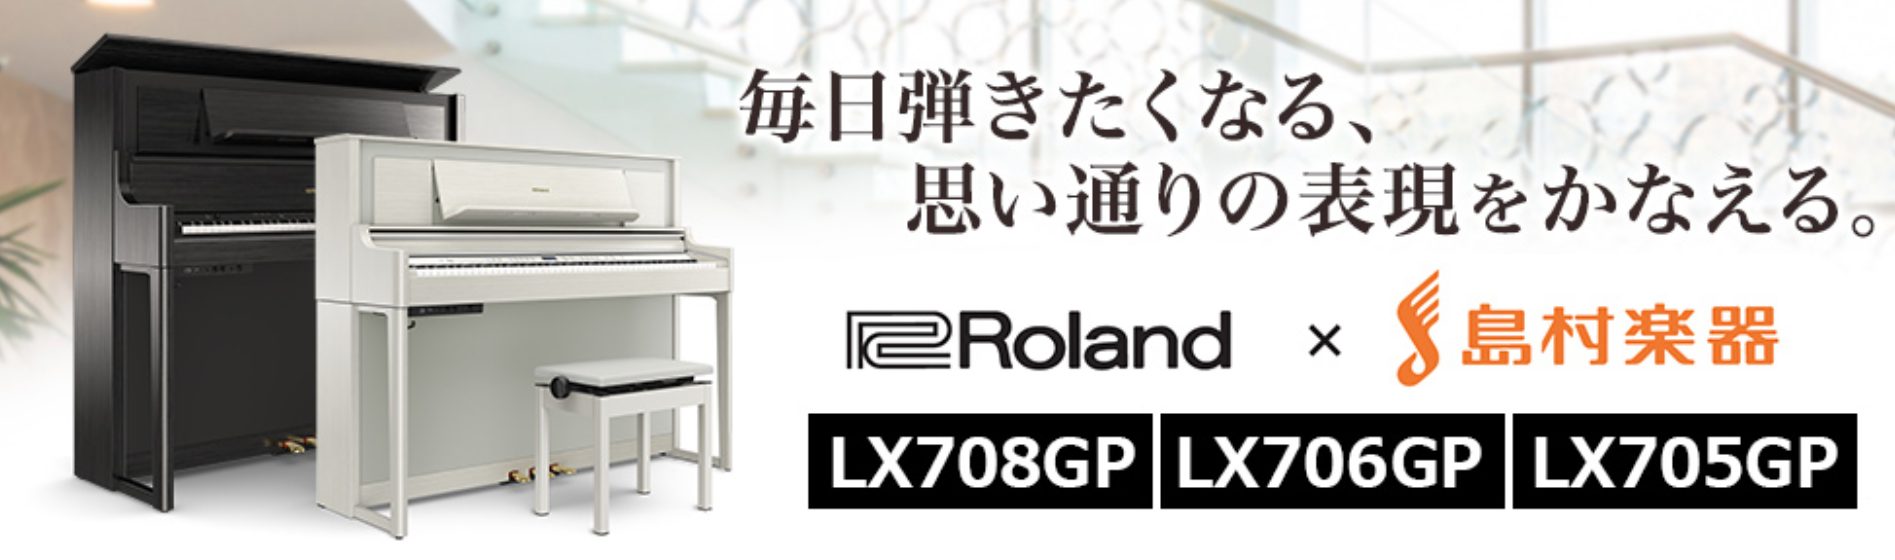 Roland電子ピアノ【LXシリーズ】が11/1より、お買い得価格となりました♪ CONTENTSLXGPシリーズ　お買い得ラインナップお問い合わせLXGPシリーズ　お買い得ラインナップ お問い合わせ